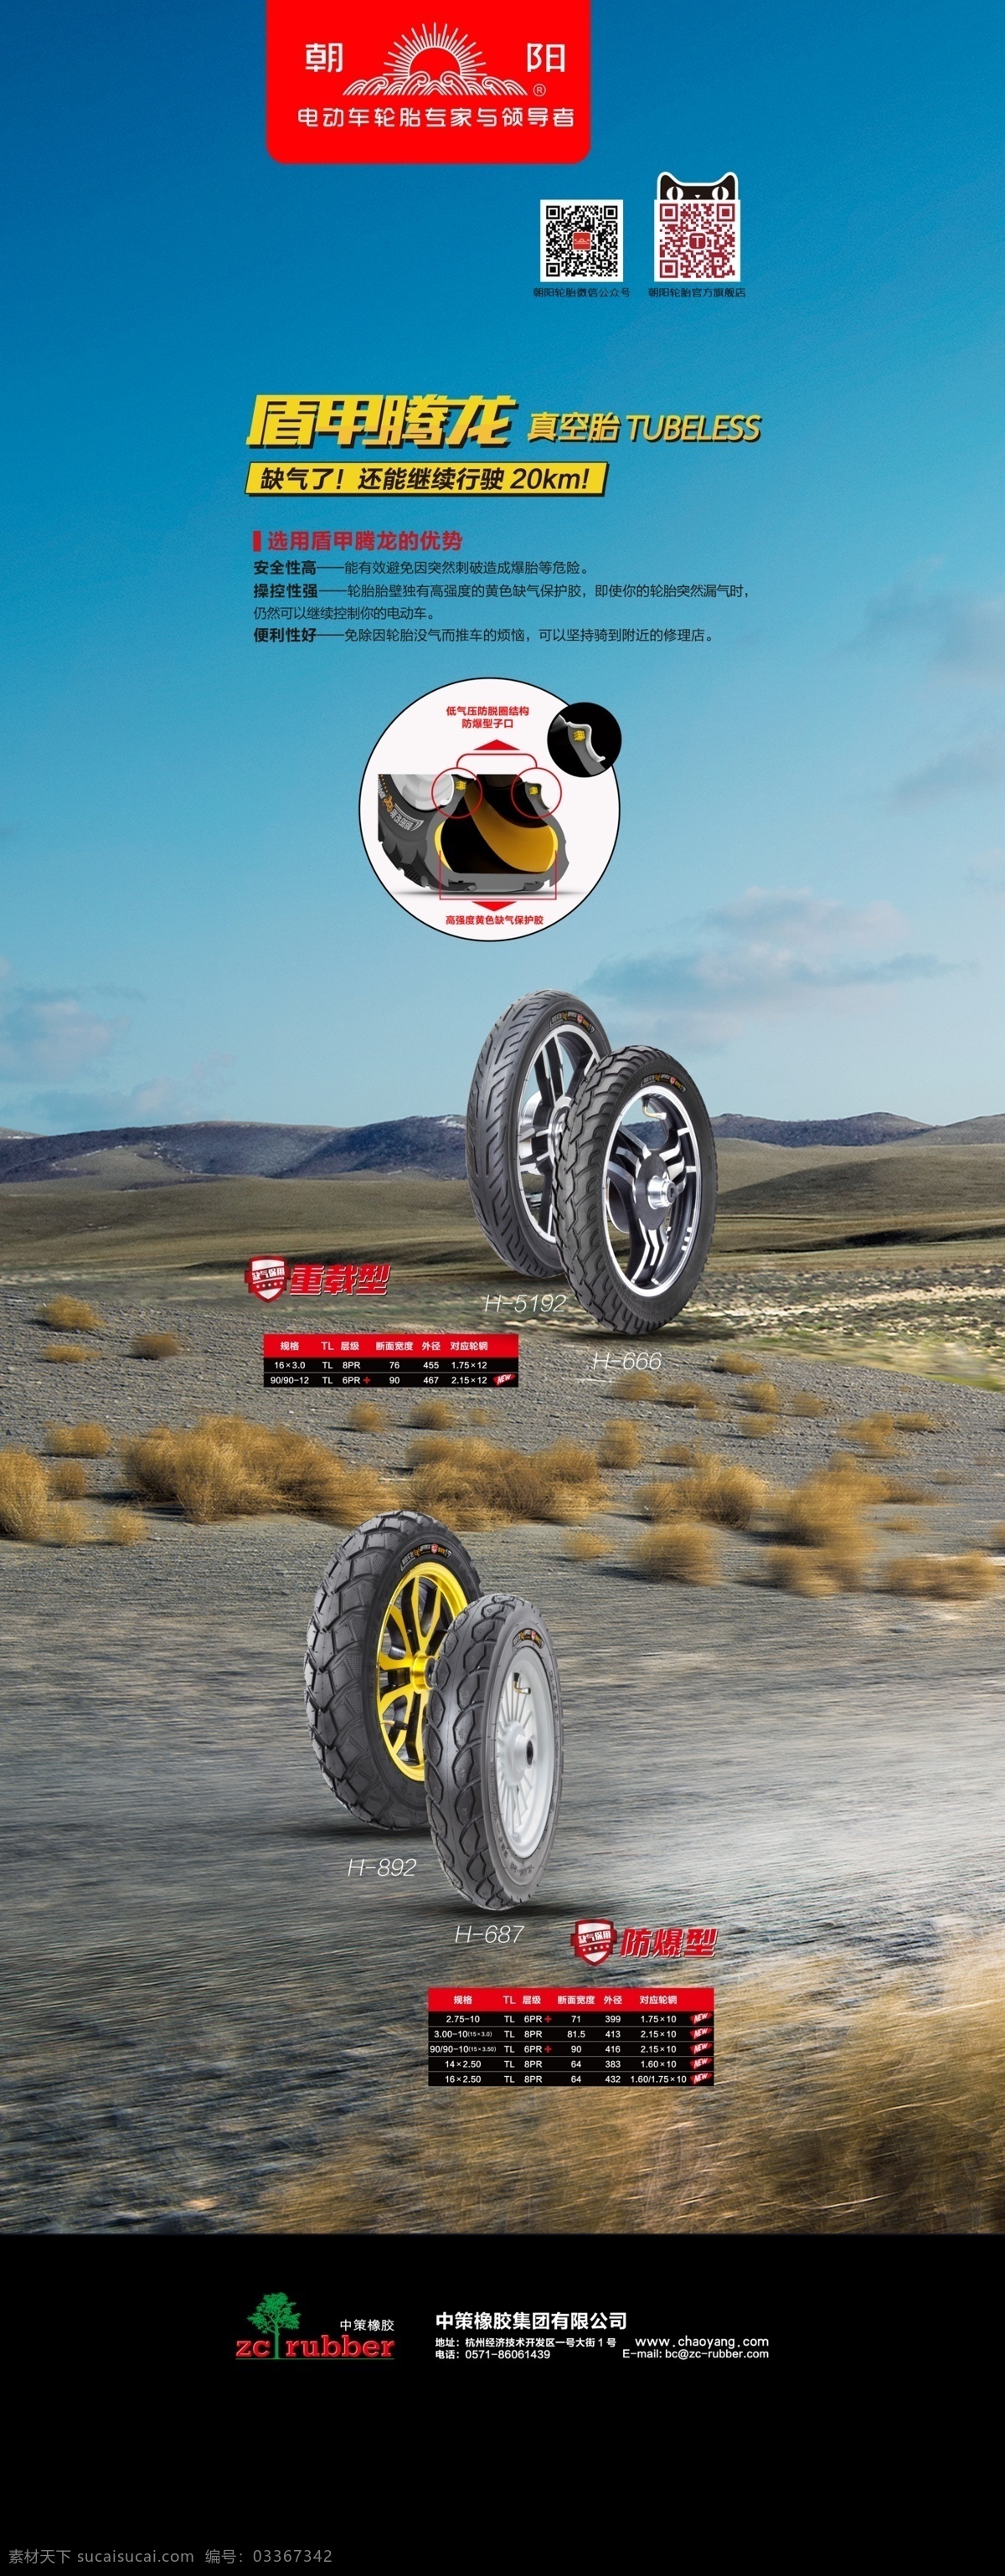 朝阳轮胎 海报 展架 轮胎 公路 平面设计